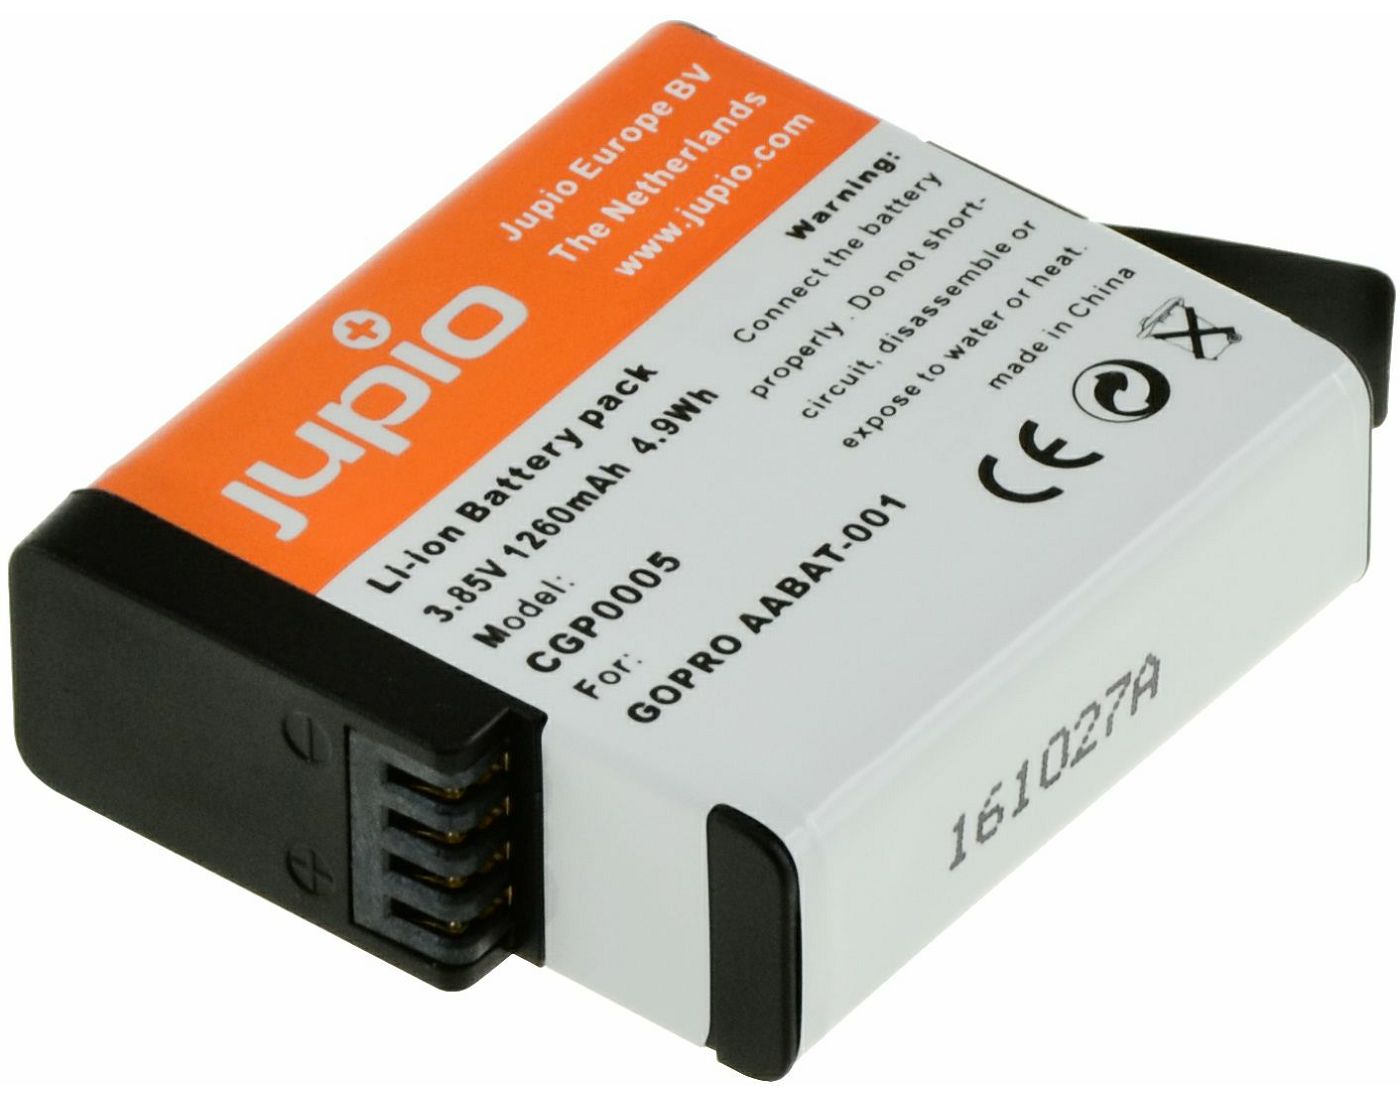 Jupio baterija za GoPro Hero5 Black Edition (CGP0005) AABAT-001 1260mAh